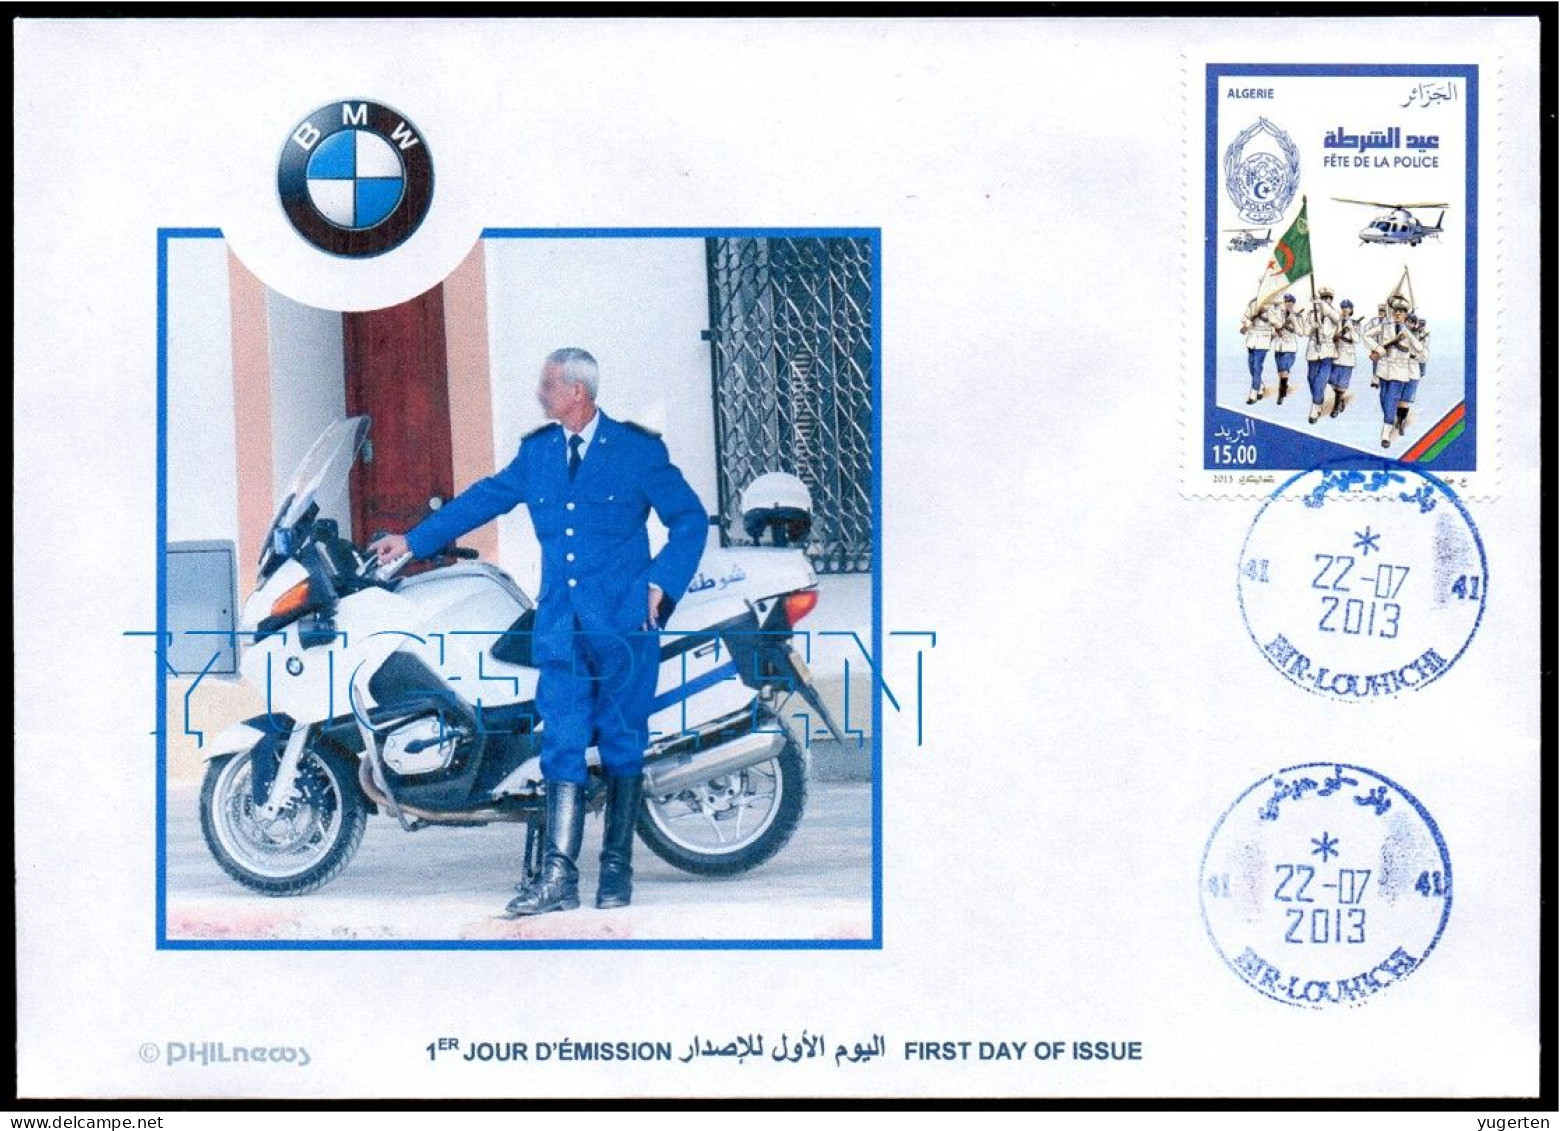 ALGERIA ALGERIE 2013 - FDC - Helicoptère - BMW - Policiers - Helicopter Police - Moto Motorbike - Motorbikes